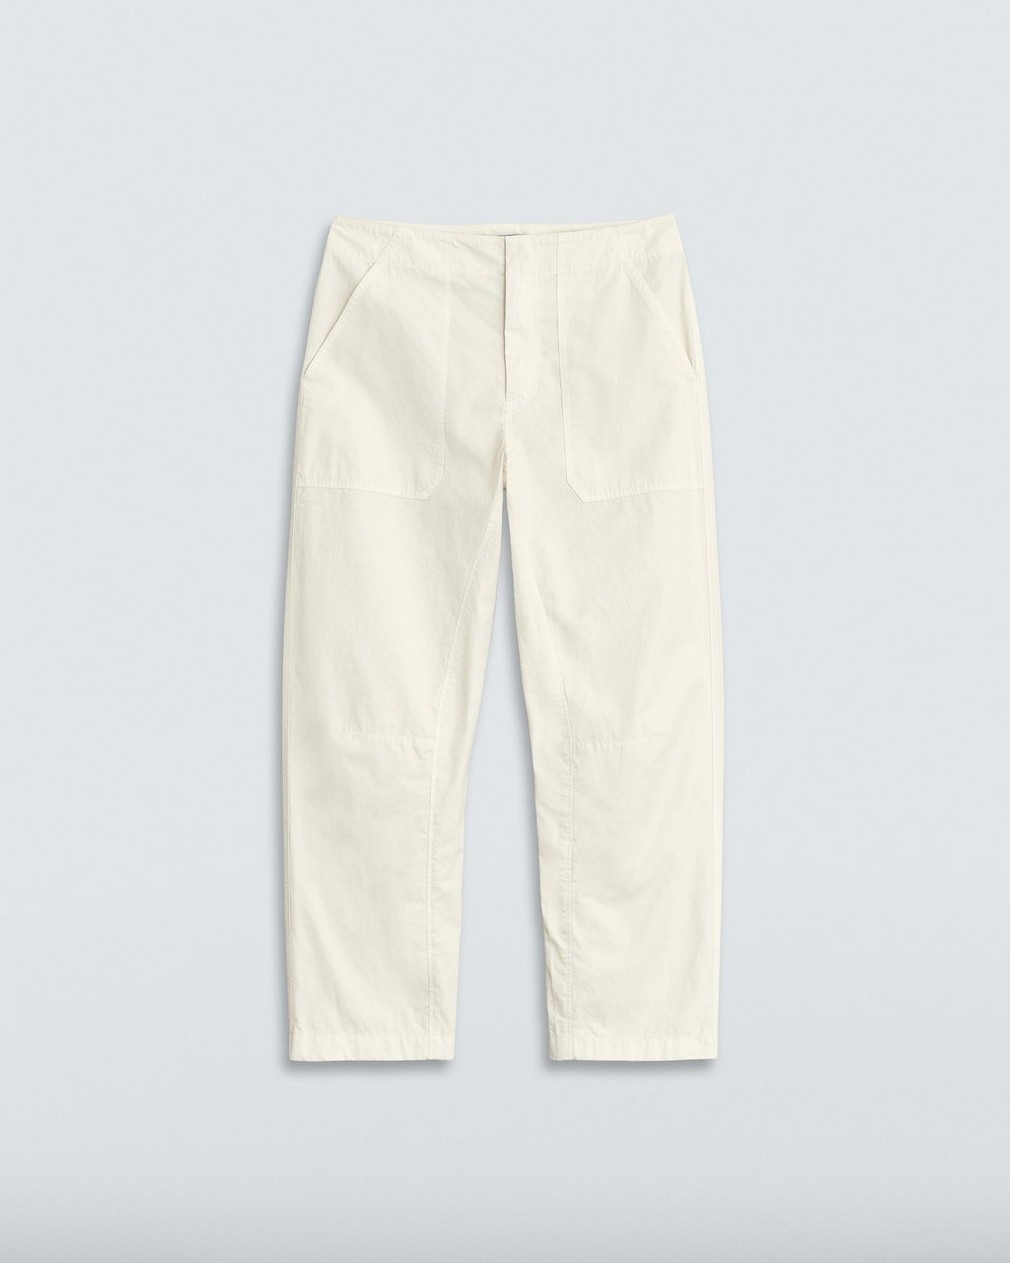 Leyton Workwear Cotton Pant